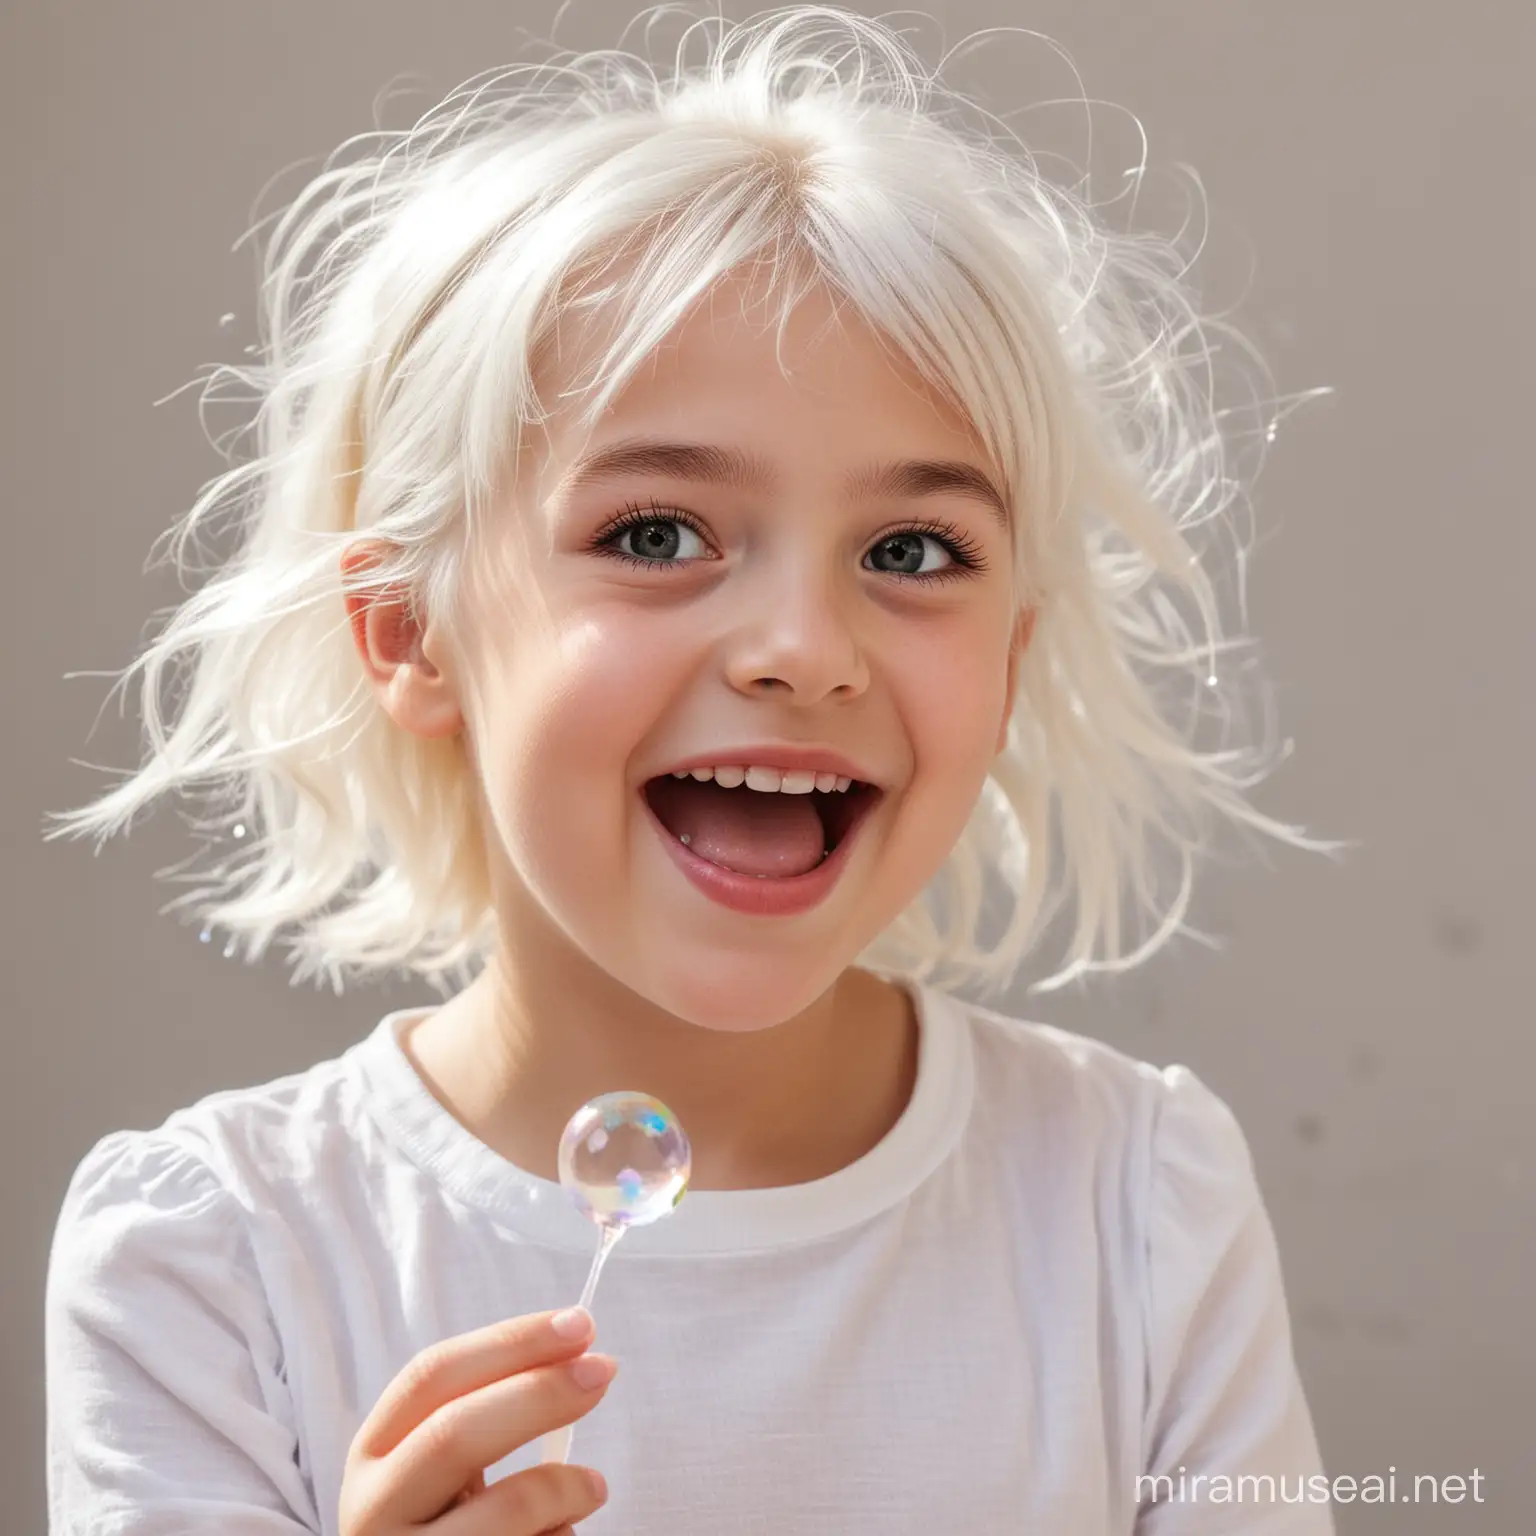 счастливая и улыбающаяся маленькая девочка с белыми волосами, пускает мыльные пузыри